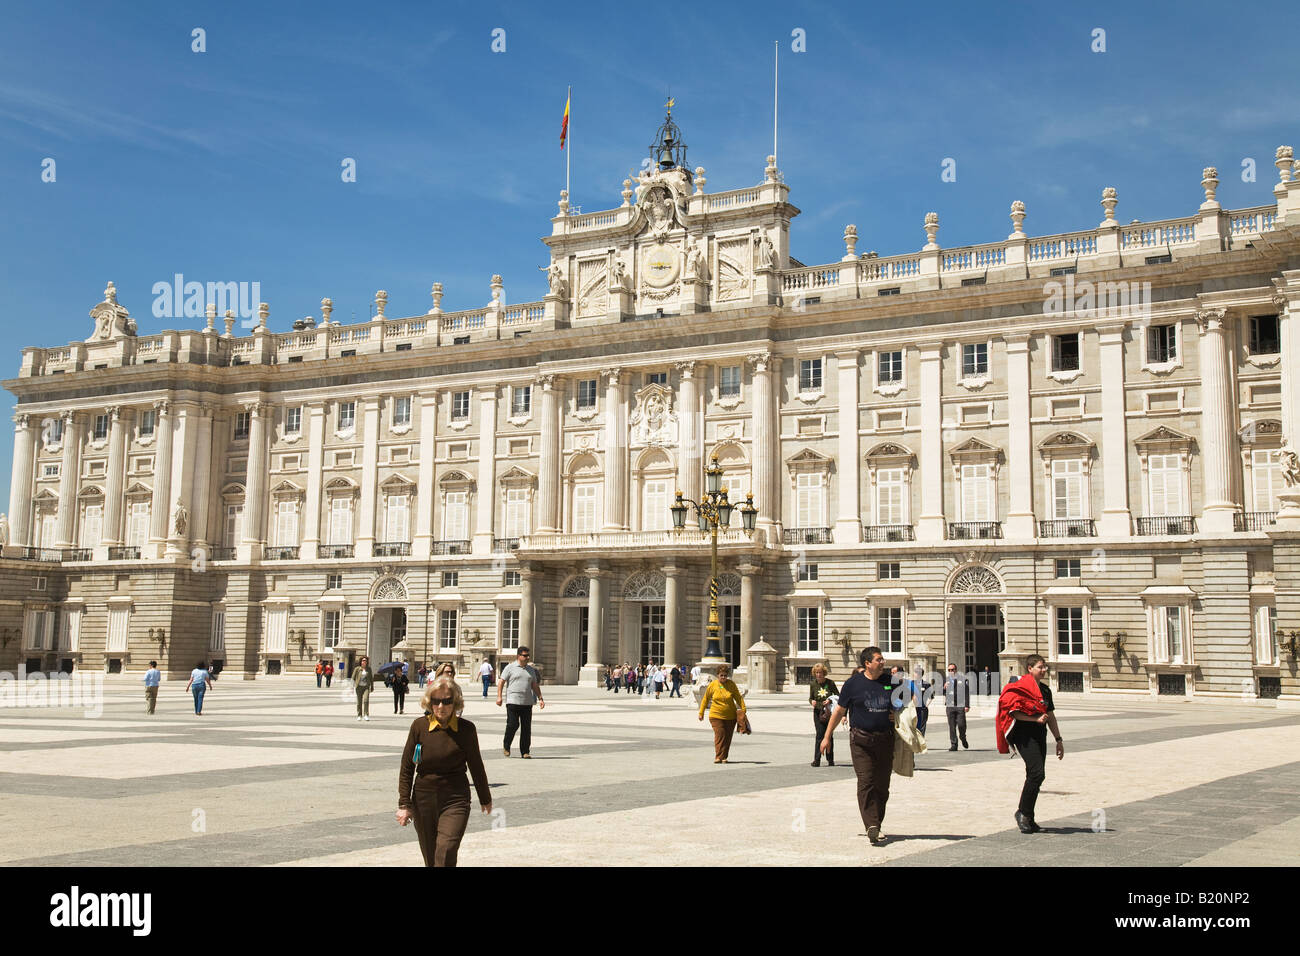 Spanien Madrid Passanten über Platz außerhalb königlichen Palast von König Philip v. im 18. Jahrhundert mit mehr als 2000 Zimmern erbaut Stockfoto